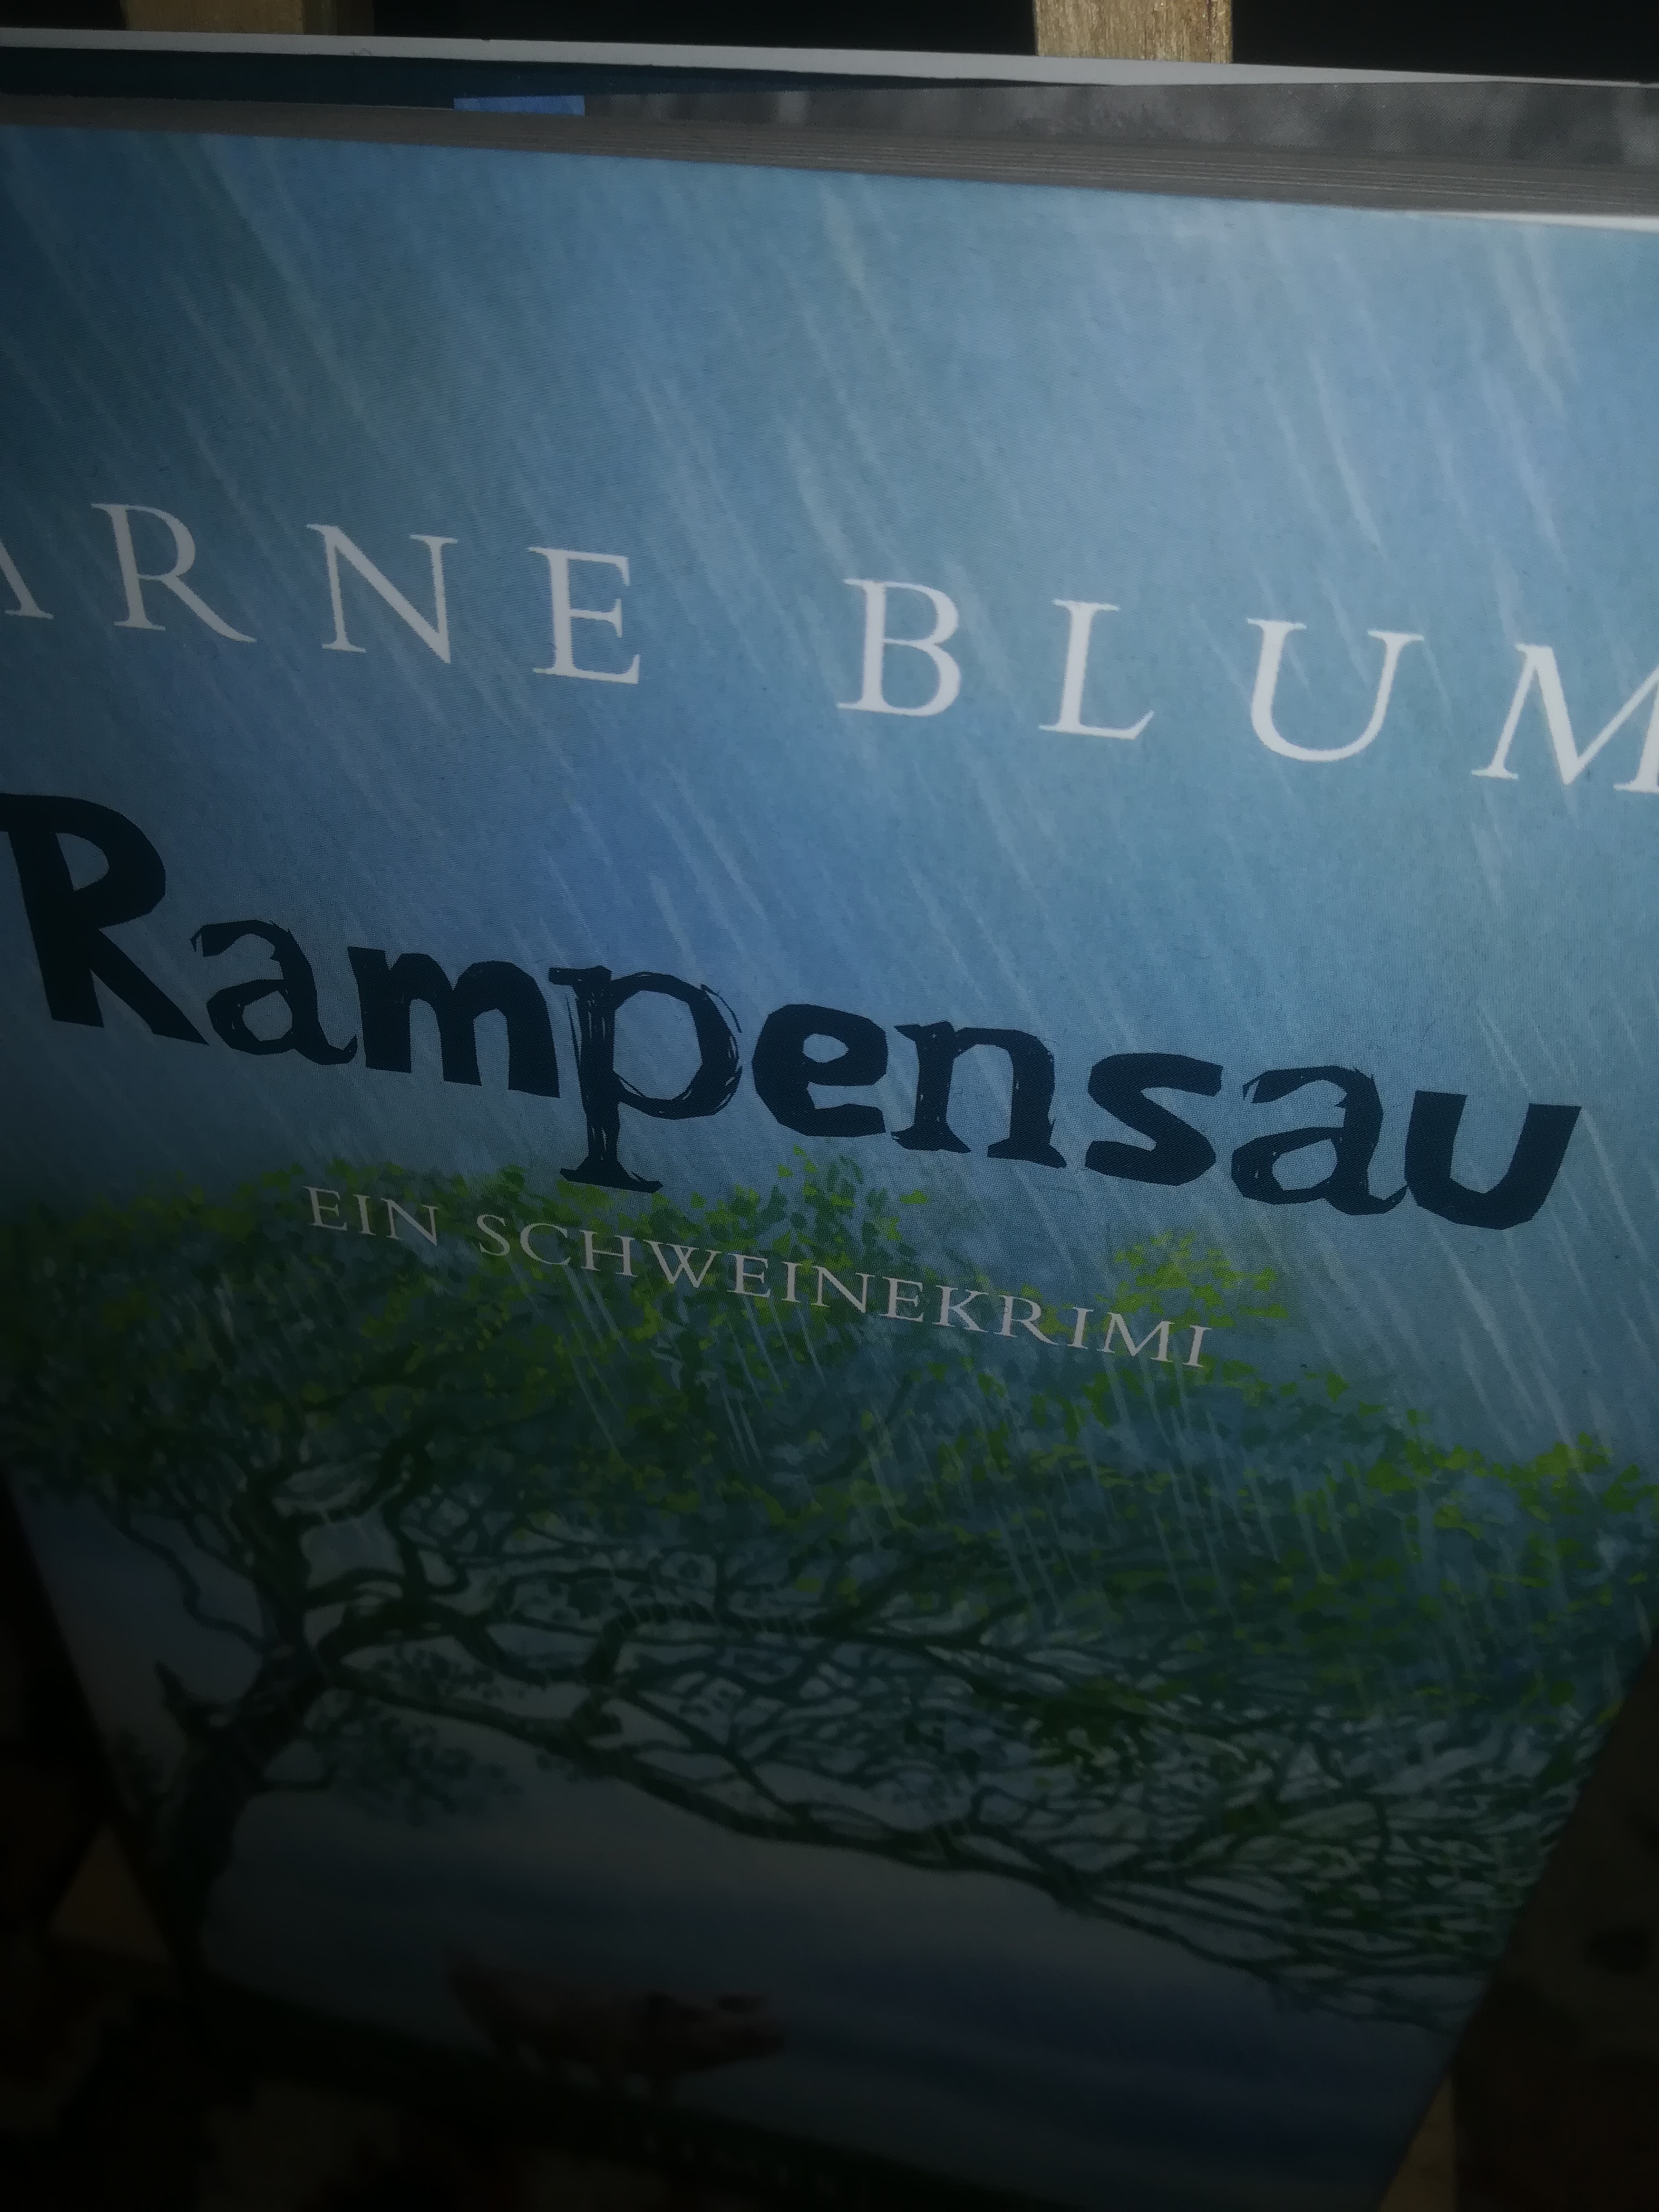 Rampensau, ein Schweinekrimi - Blum Arne